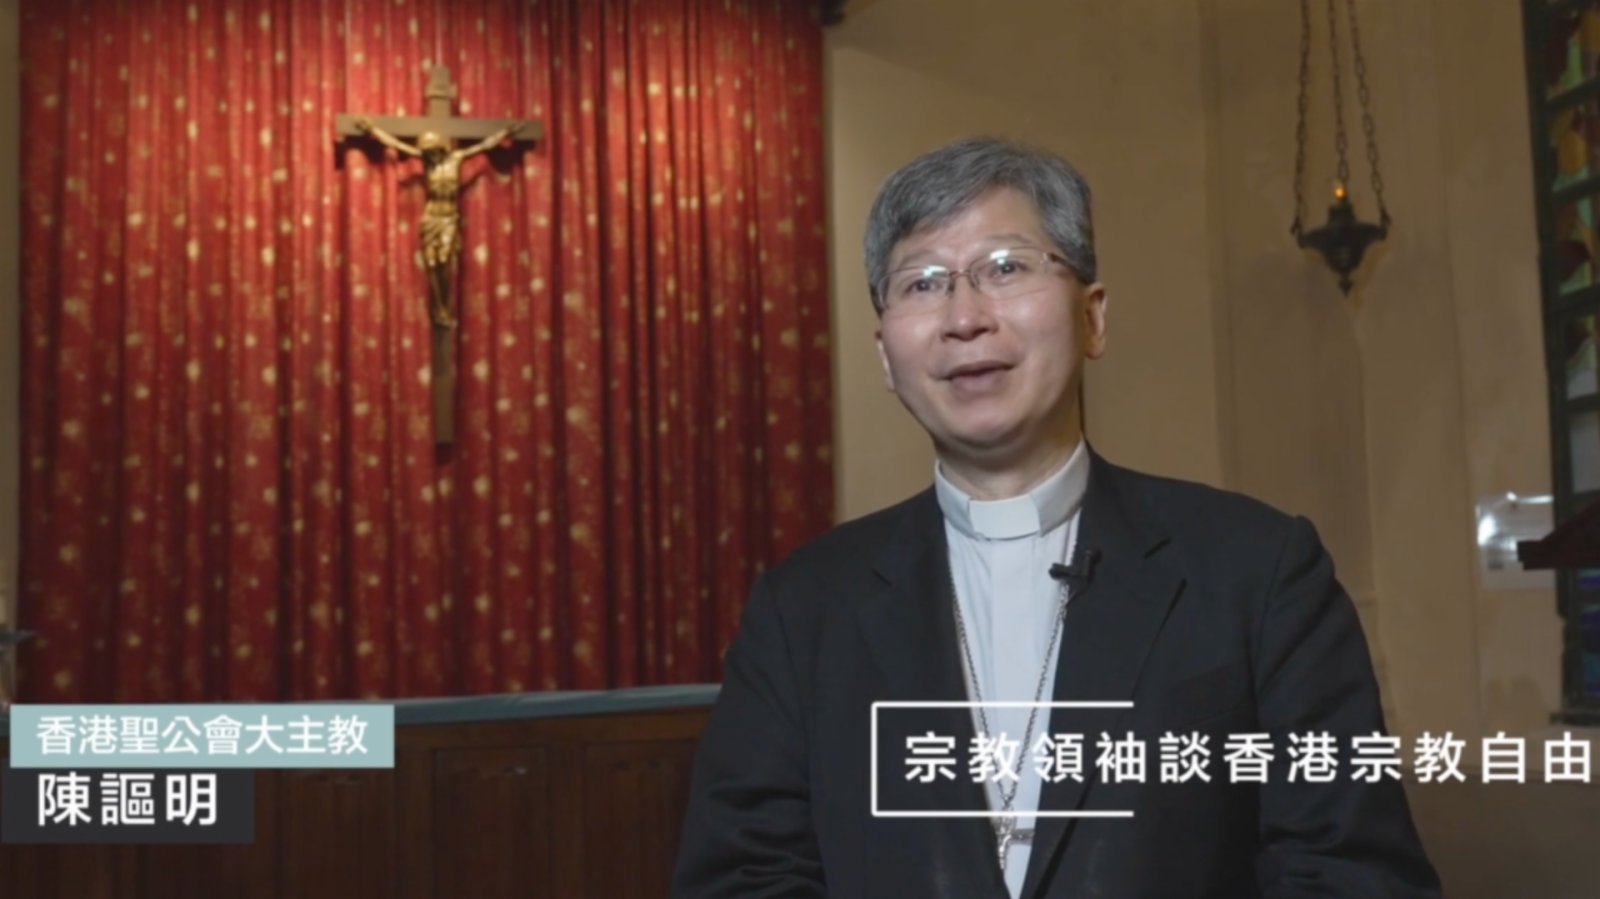 基督教領袖談香港宗教自由